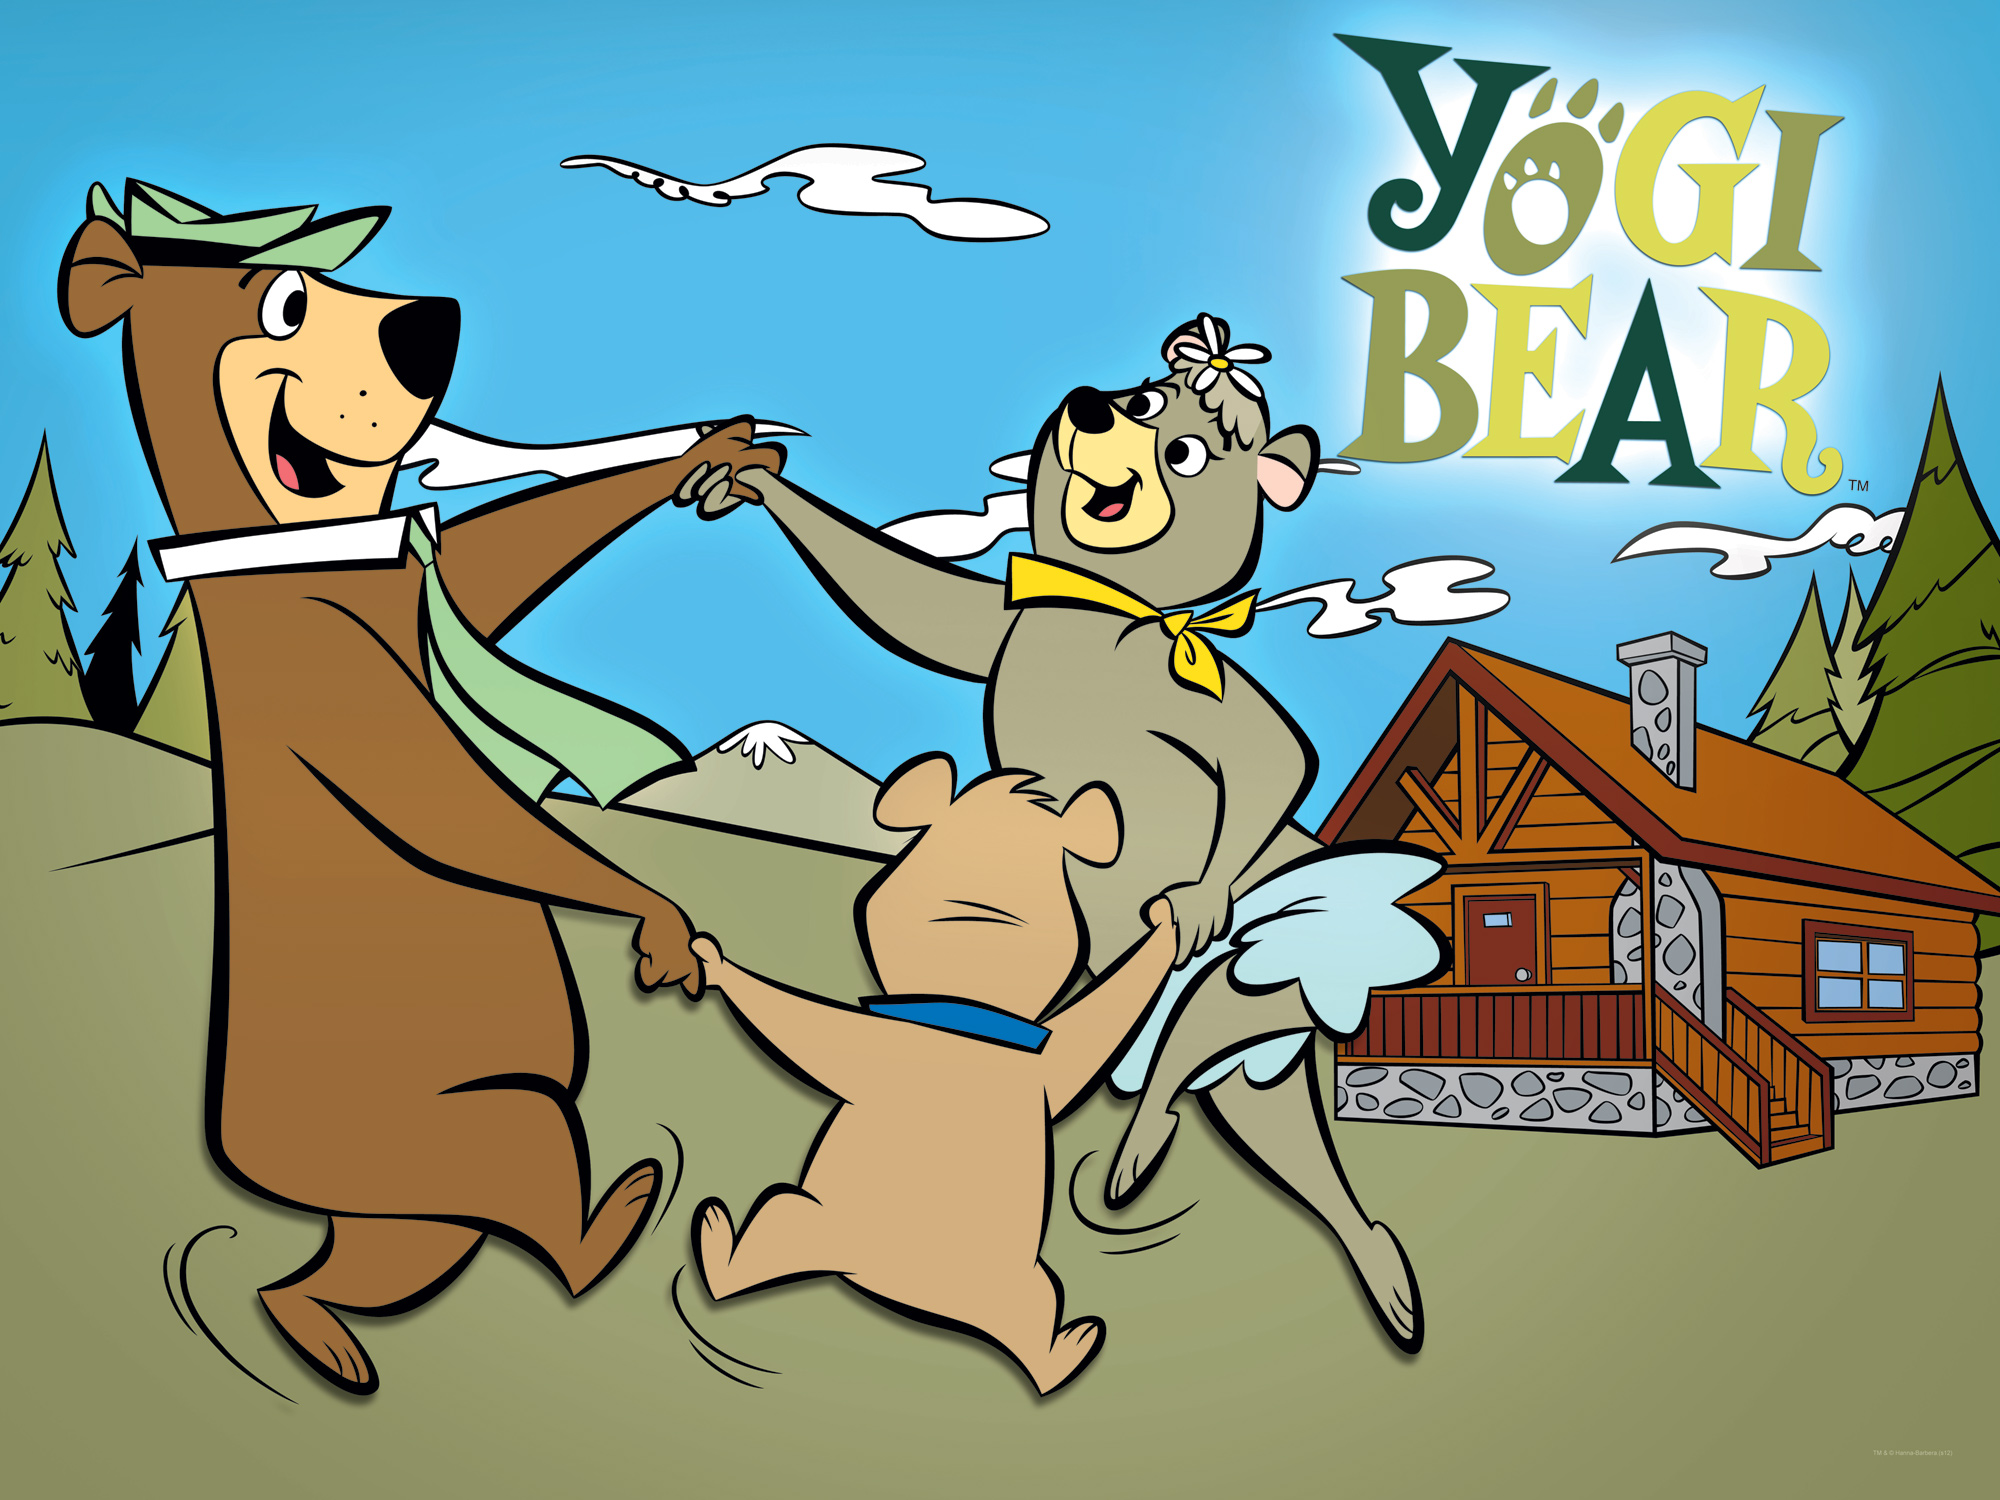 Скачать обои Медведь Йоги на телефон бесплатно